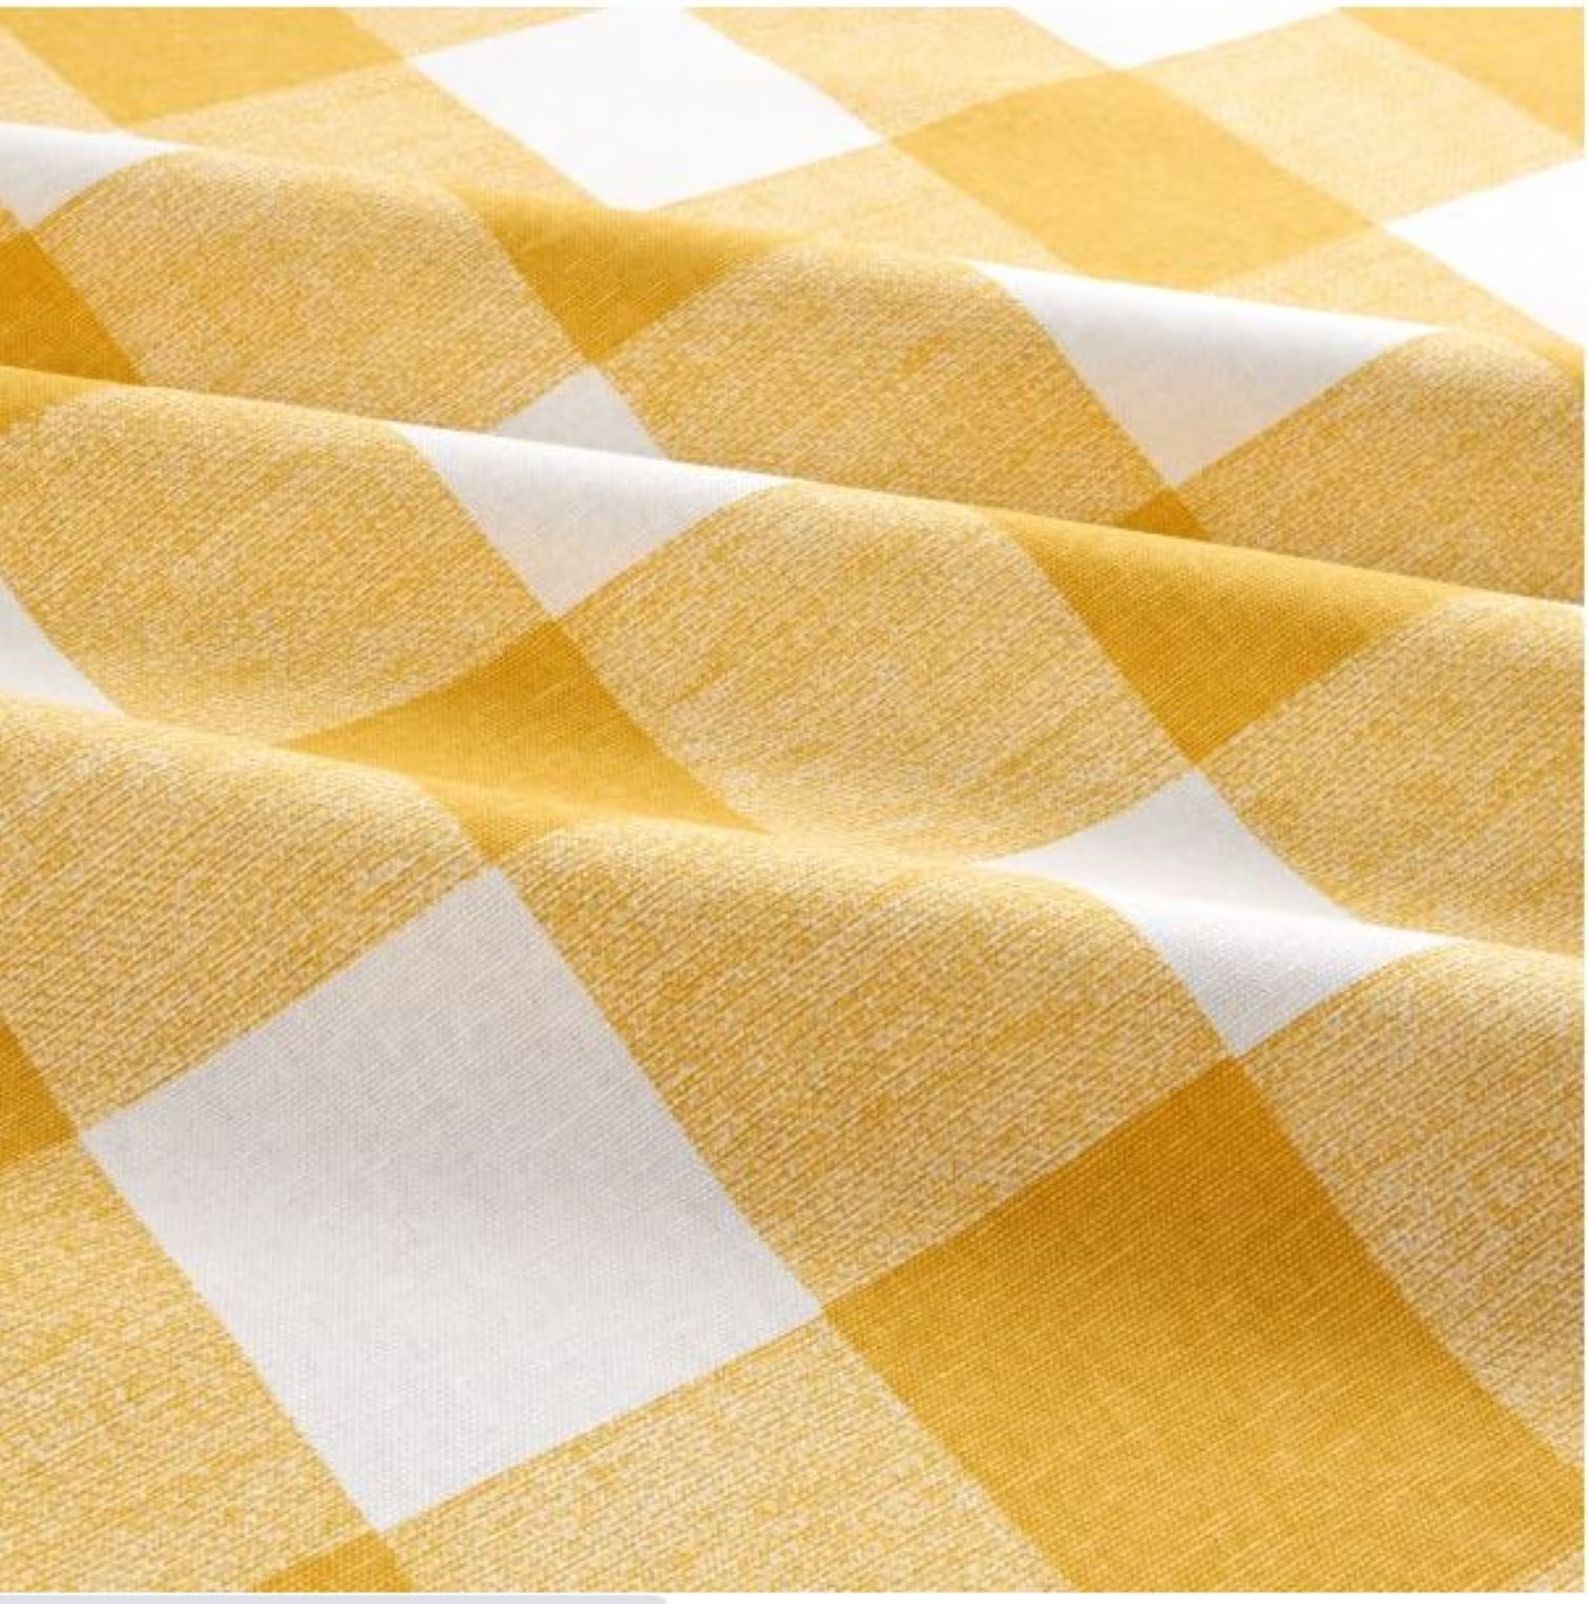 Yellow Check Table Cloth, Buffalo Check Table Cloth, Yellow White Table Cloth, Easter Table Cloth... | Etsy (US)